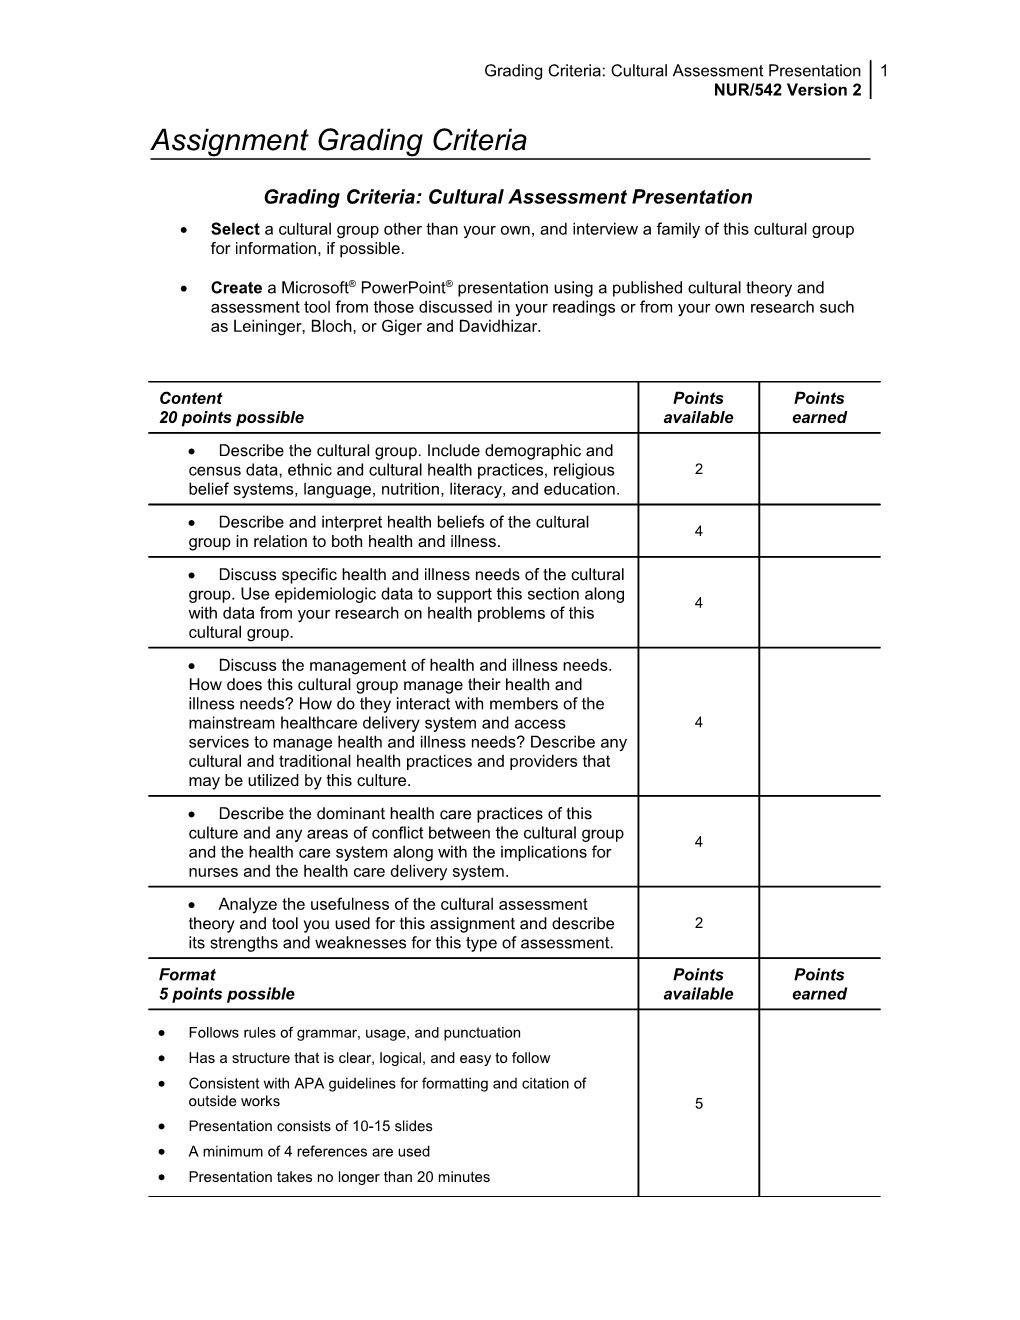 Written Assignment Grading Criteria s1